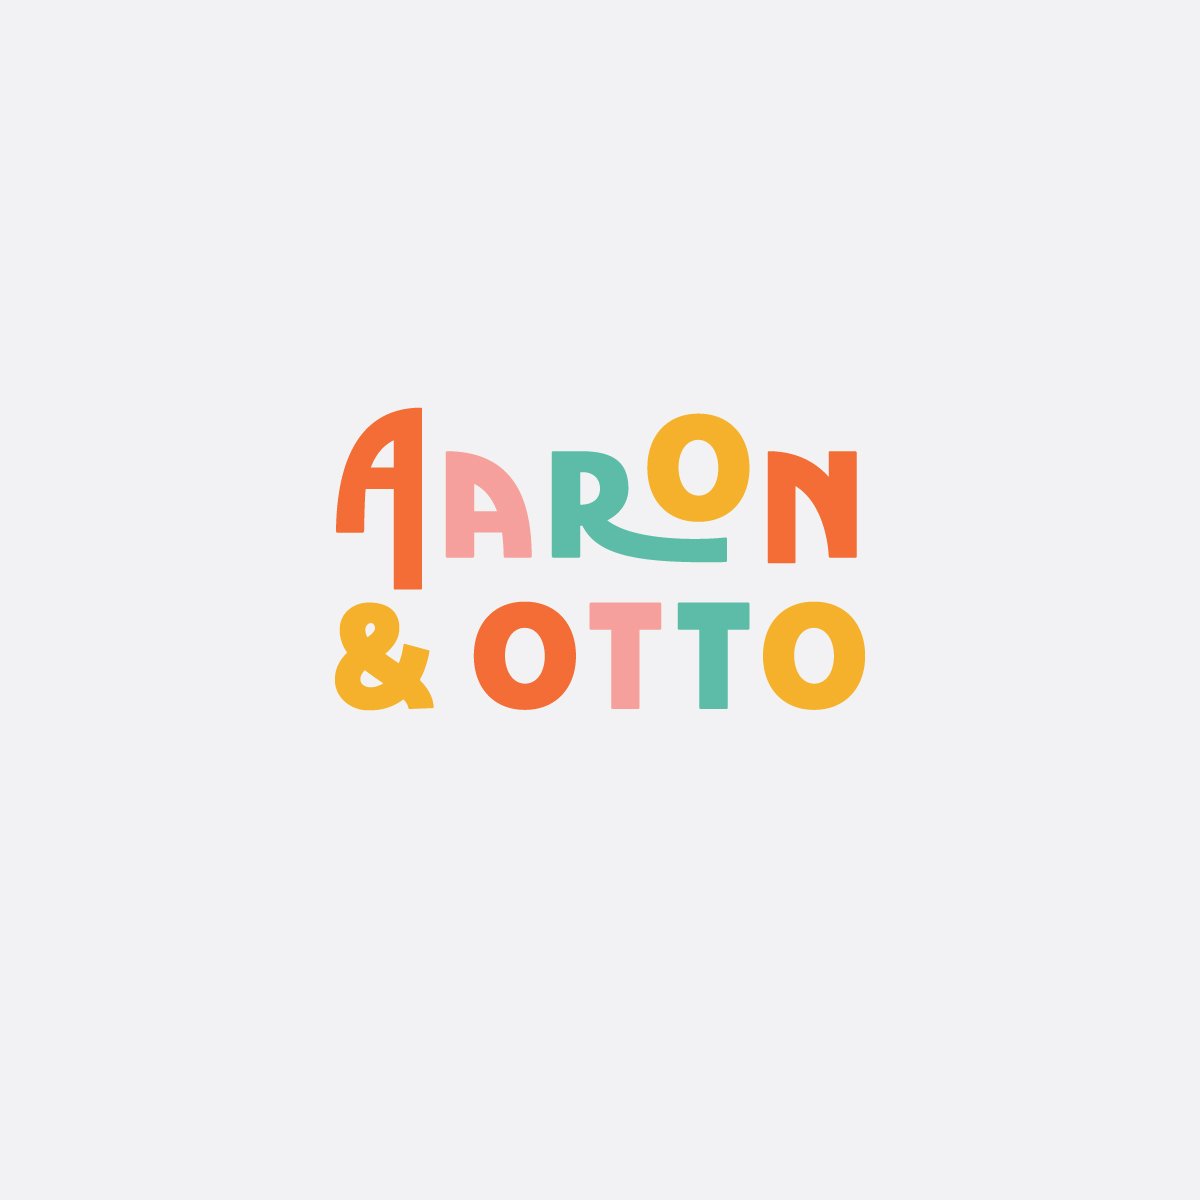 Aaron&OttoFinalLogo1.jpg